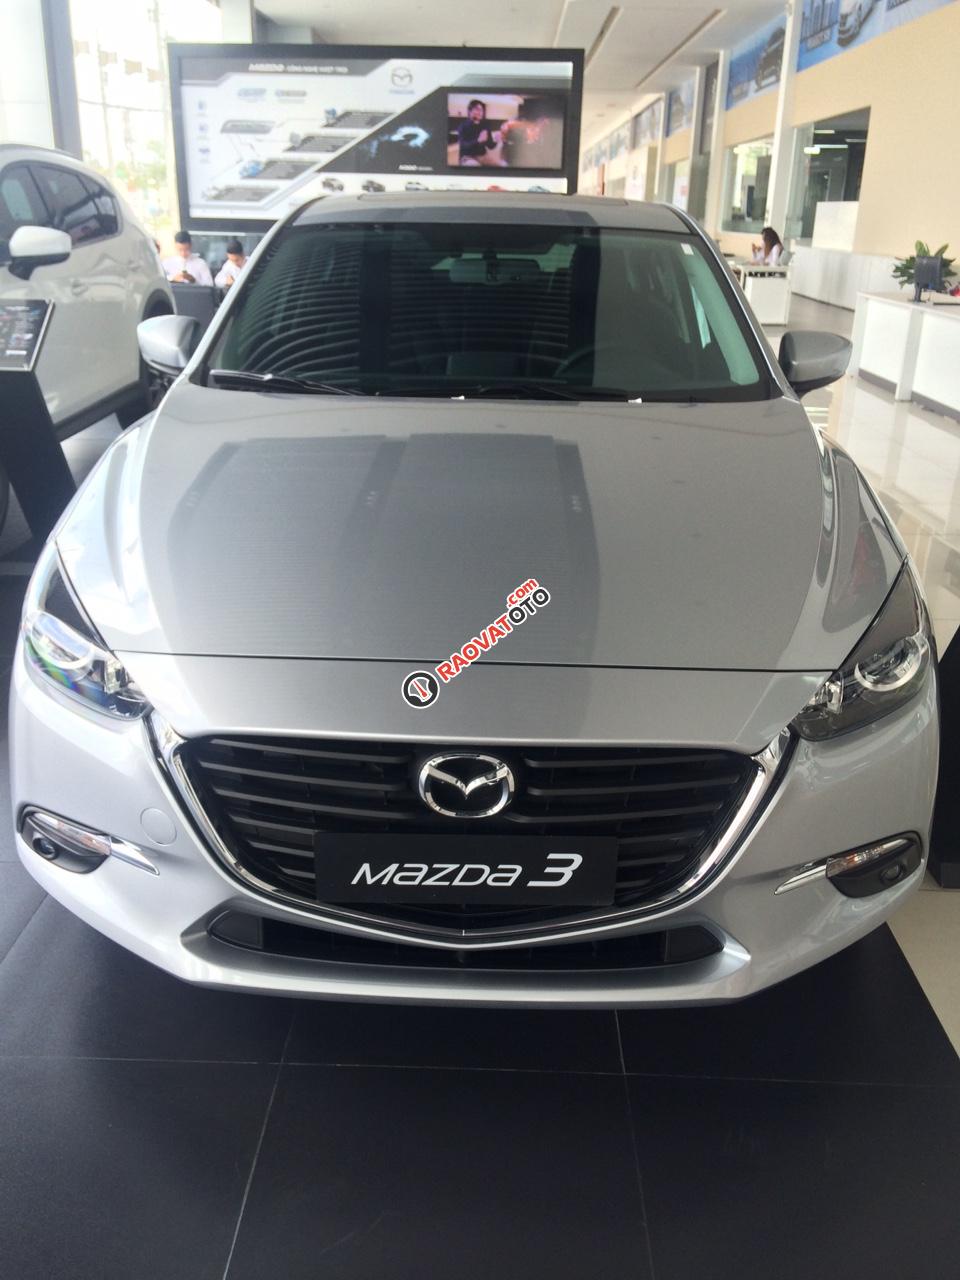 Bán Mazda 3 xe gia đình, giảm thêm 25 triệu, 169 triệu lấy xe lăn bánh, lãi suất ưu đãi, LH Nhung 0907148849-7